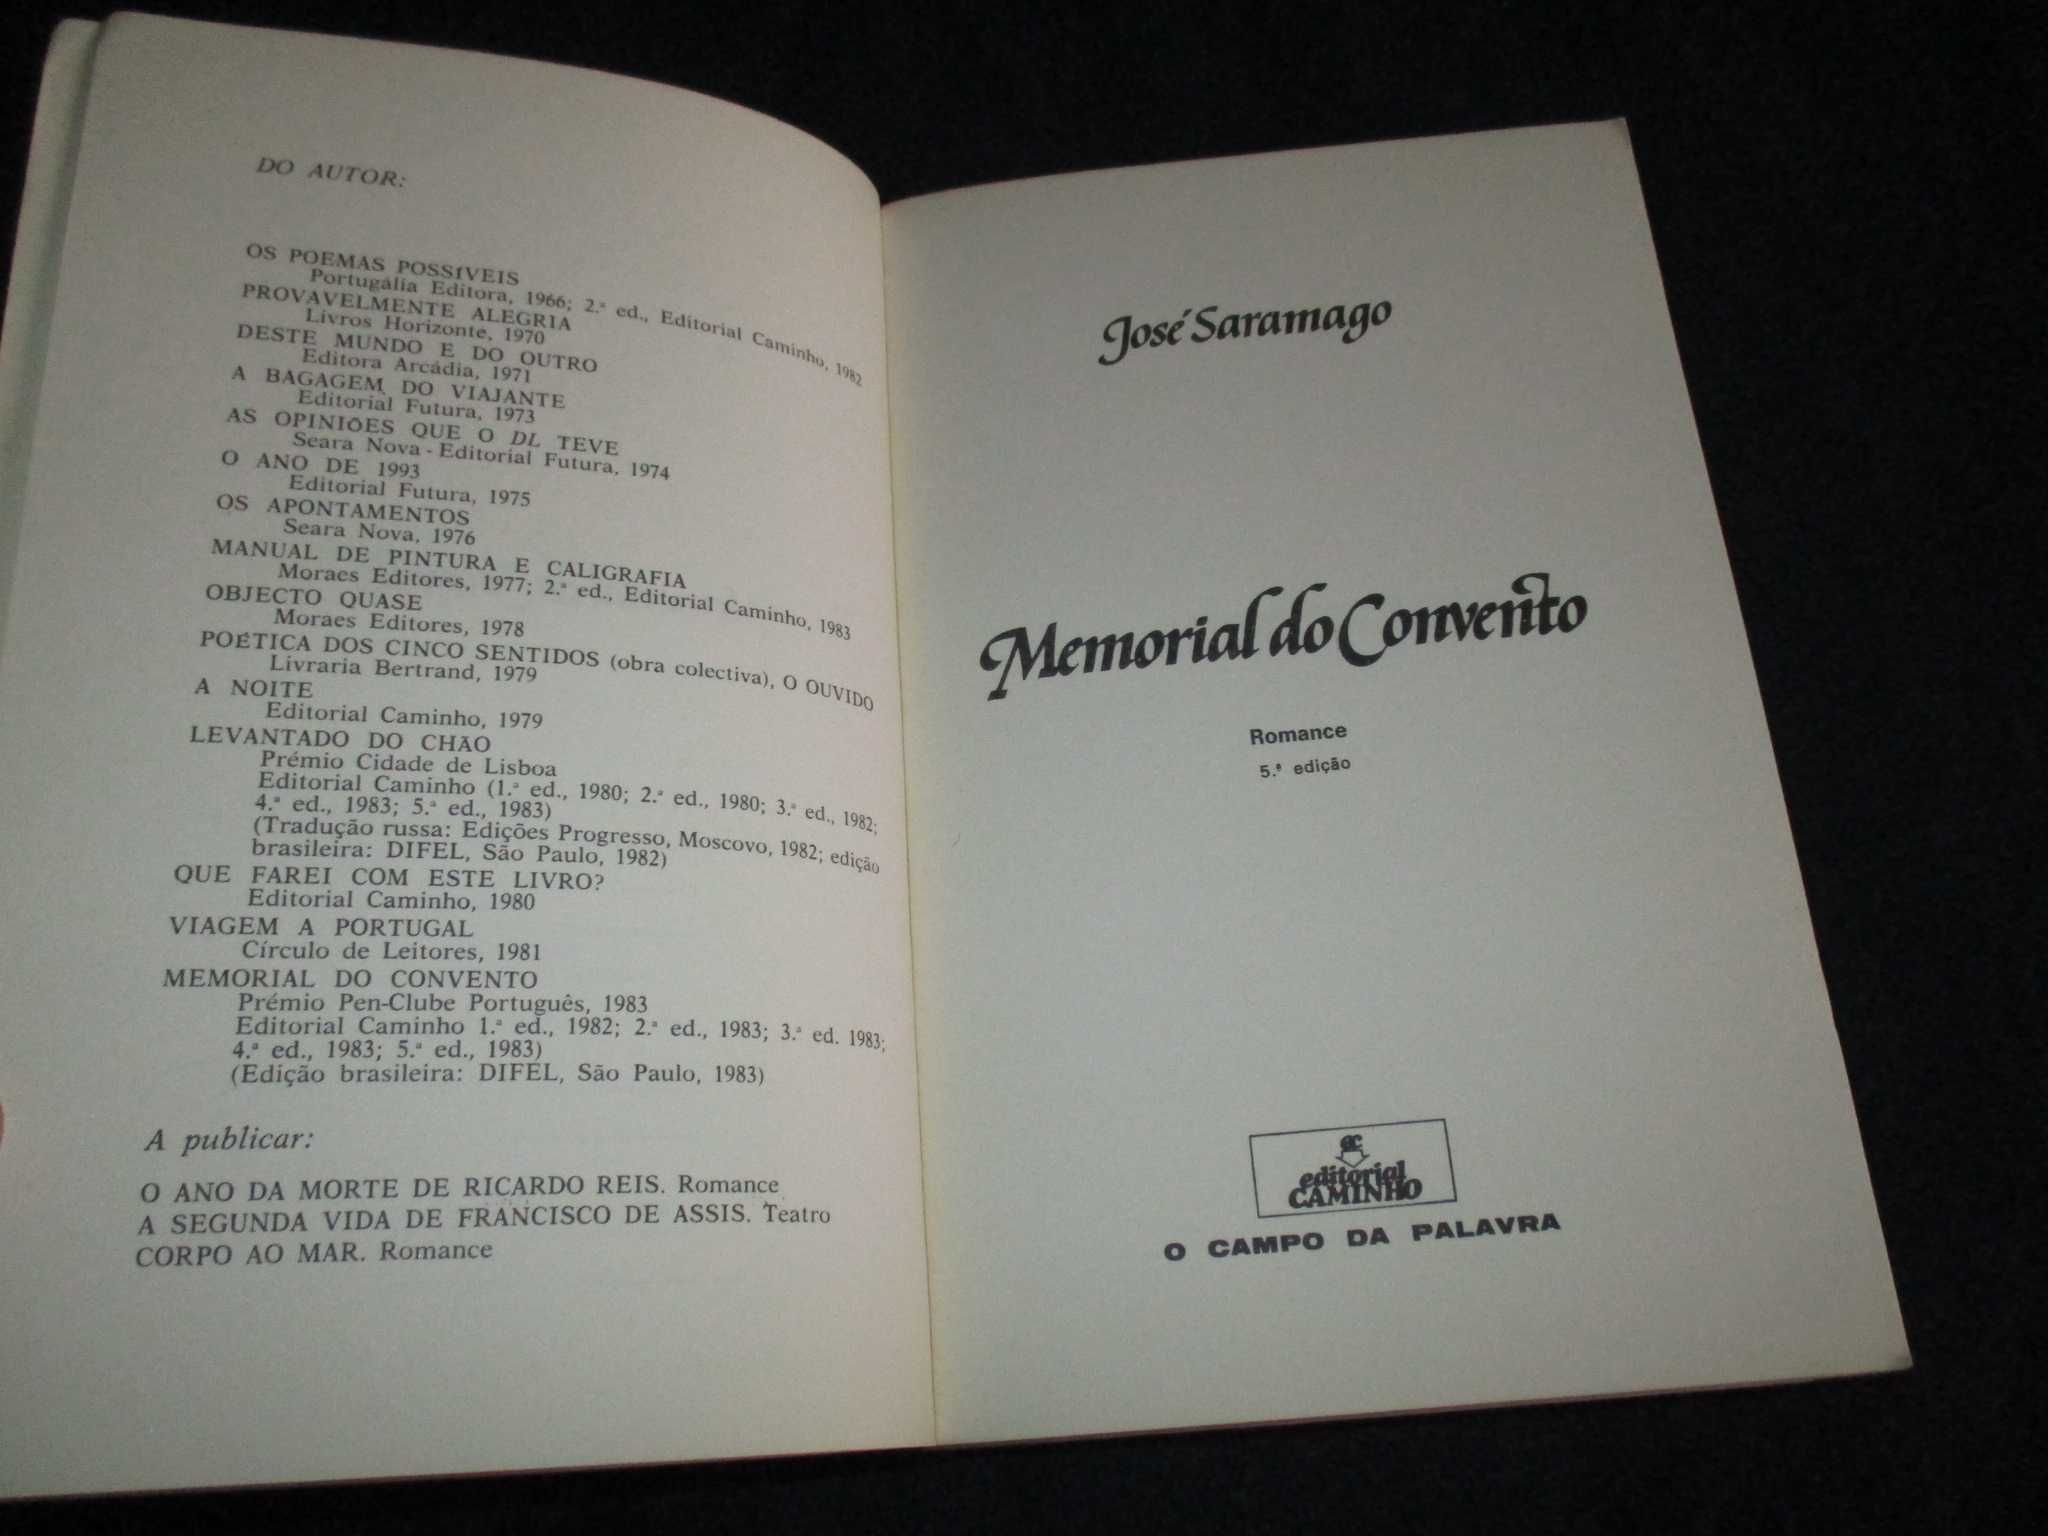 Livro Memorial do Convento José Saramago Caminho 5ª edição